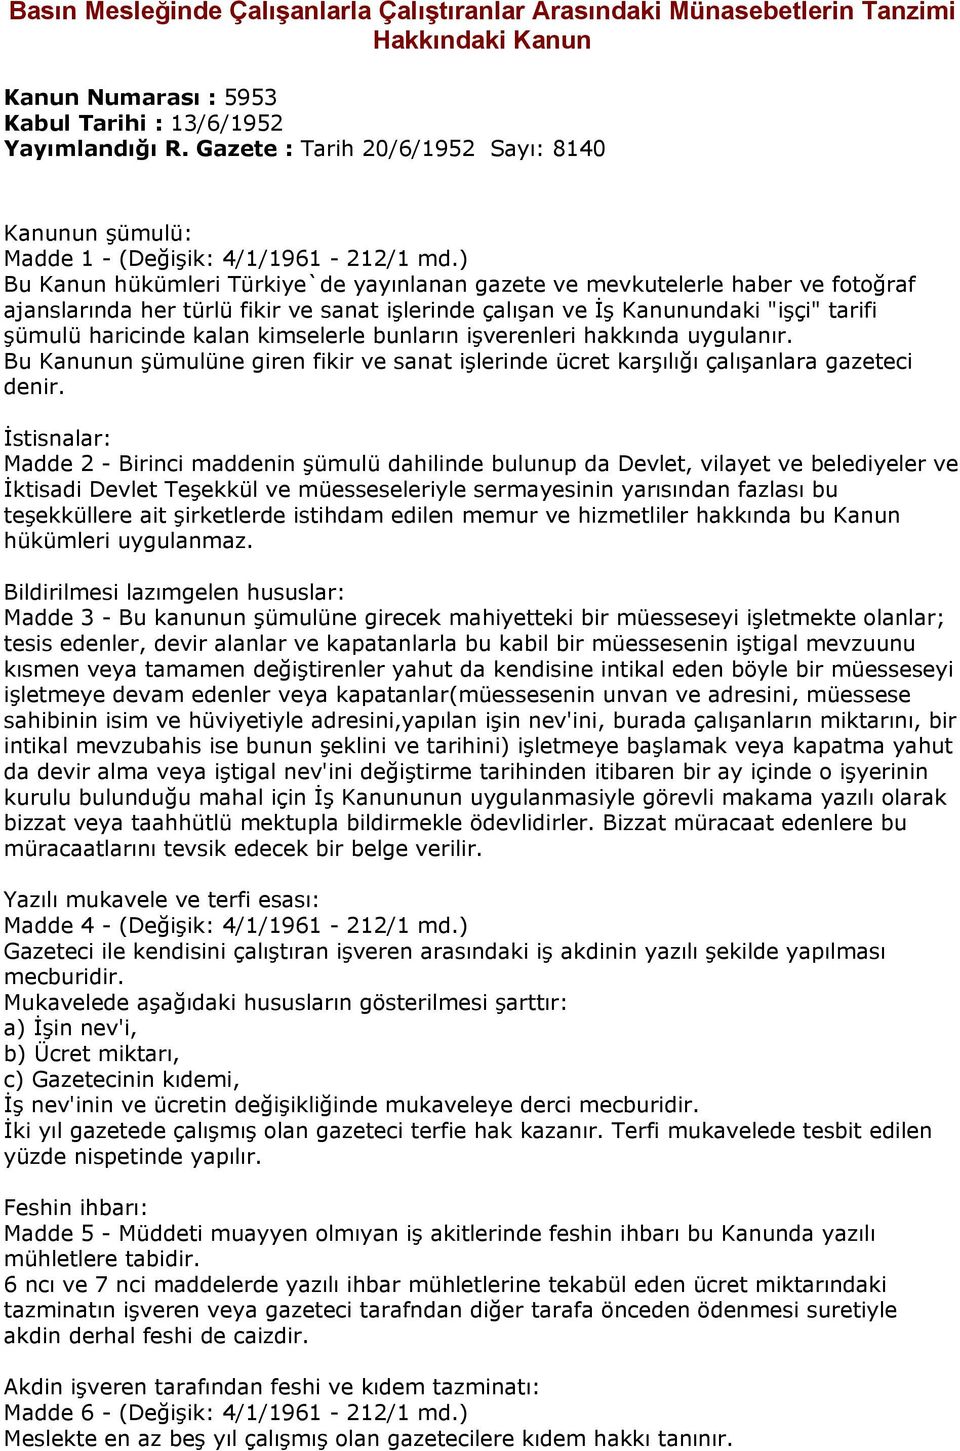 ) Bu Kanun hükümleri Türkiye`de yayınlanan gazete ve mevkutelerle haber ve fotoğraf ajanslarında her türlü fikir ve sanat işlerinde çalışan ve İş Kanunundaki "işçi" tarifi şümulü haricinde kalan